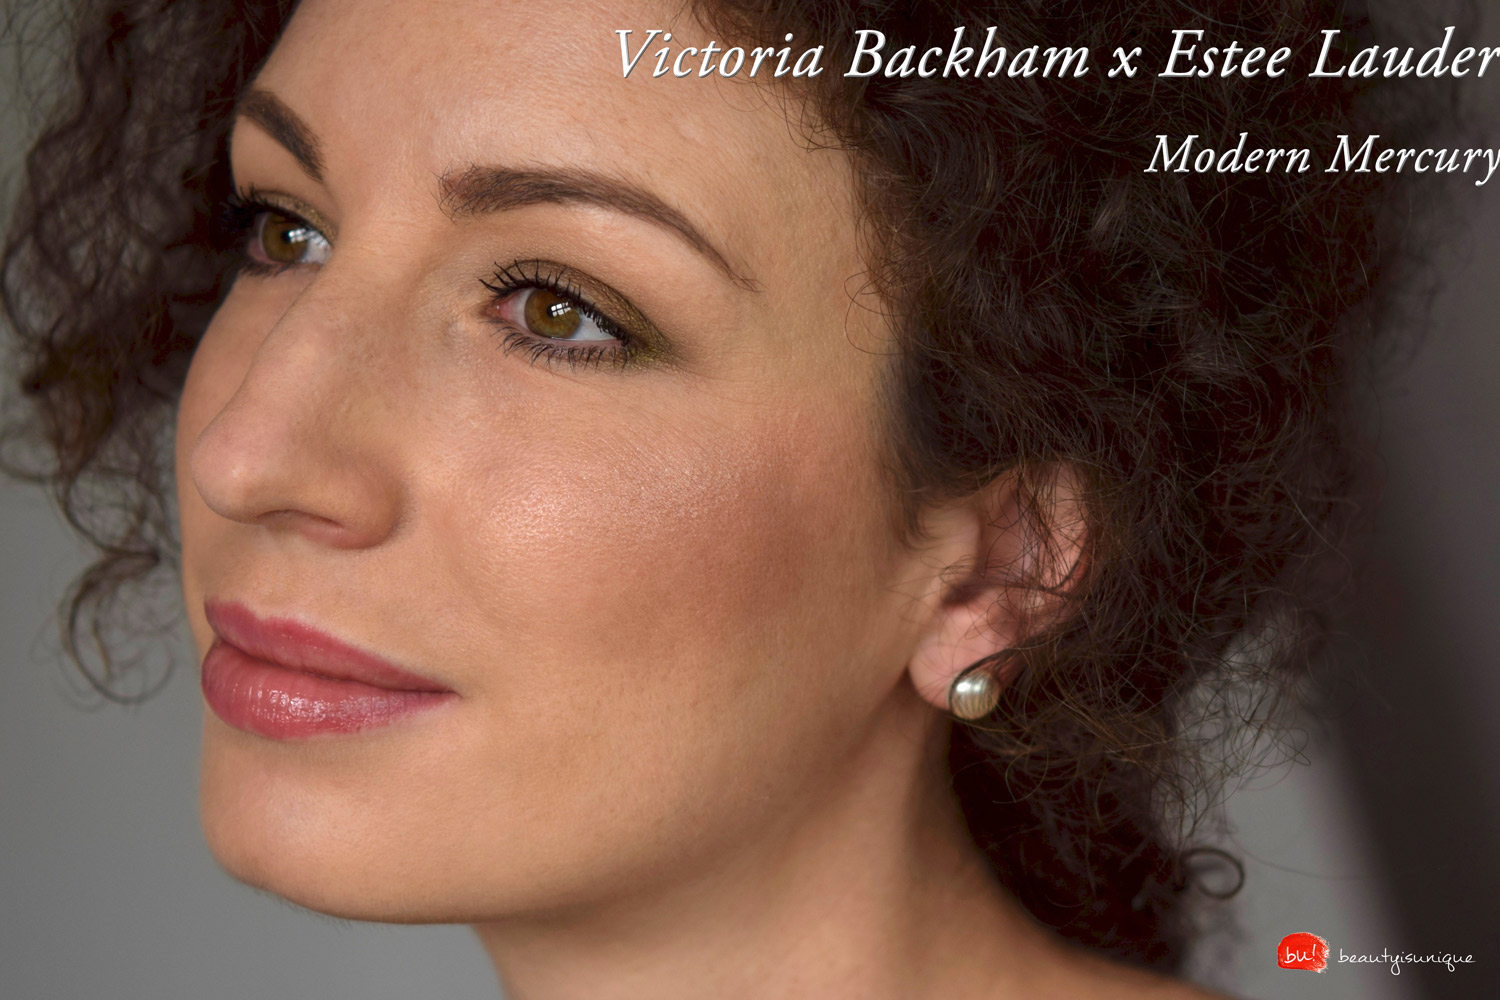 Victoria-beckham-estee-lauder-modern-mercury